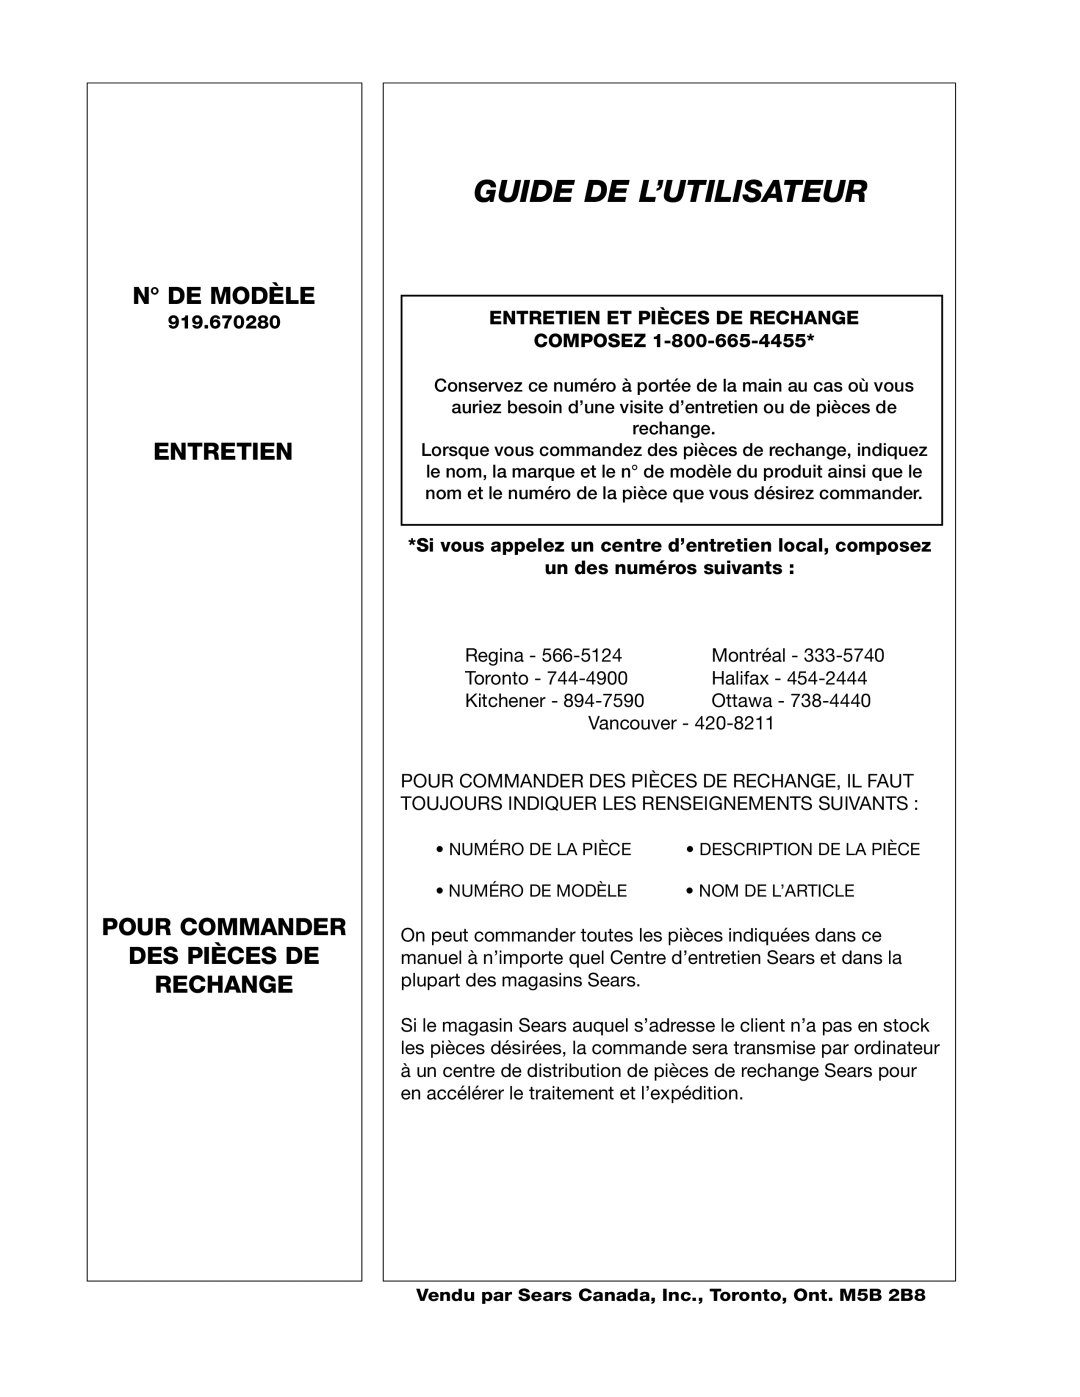 Craftsman 919.670280 Craftsman, Guide De L’Utilisateur, N De Modèle, Entretien Pour Commander Des Pièces De Rechange 